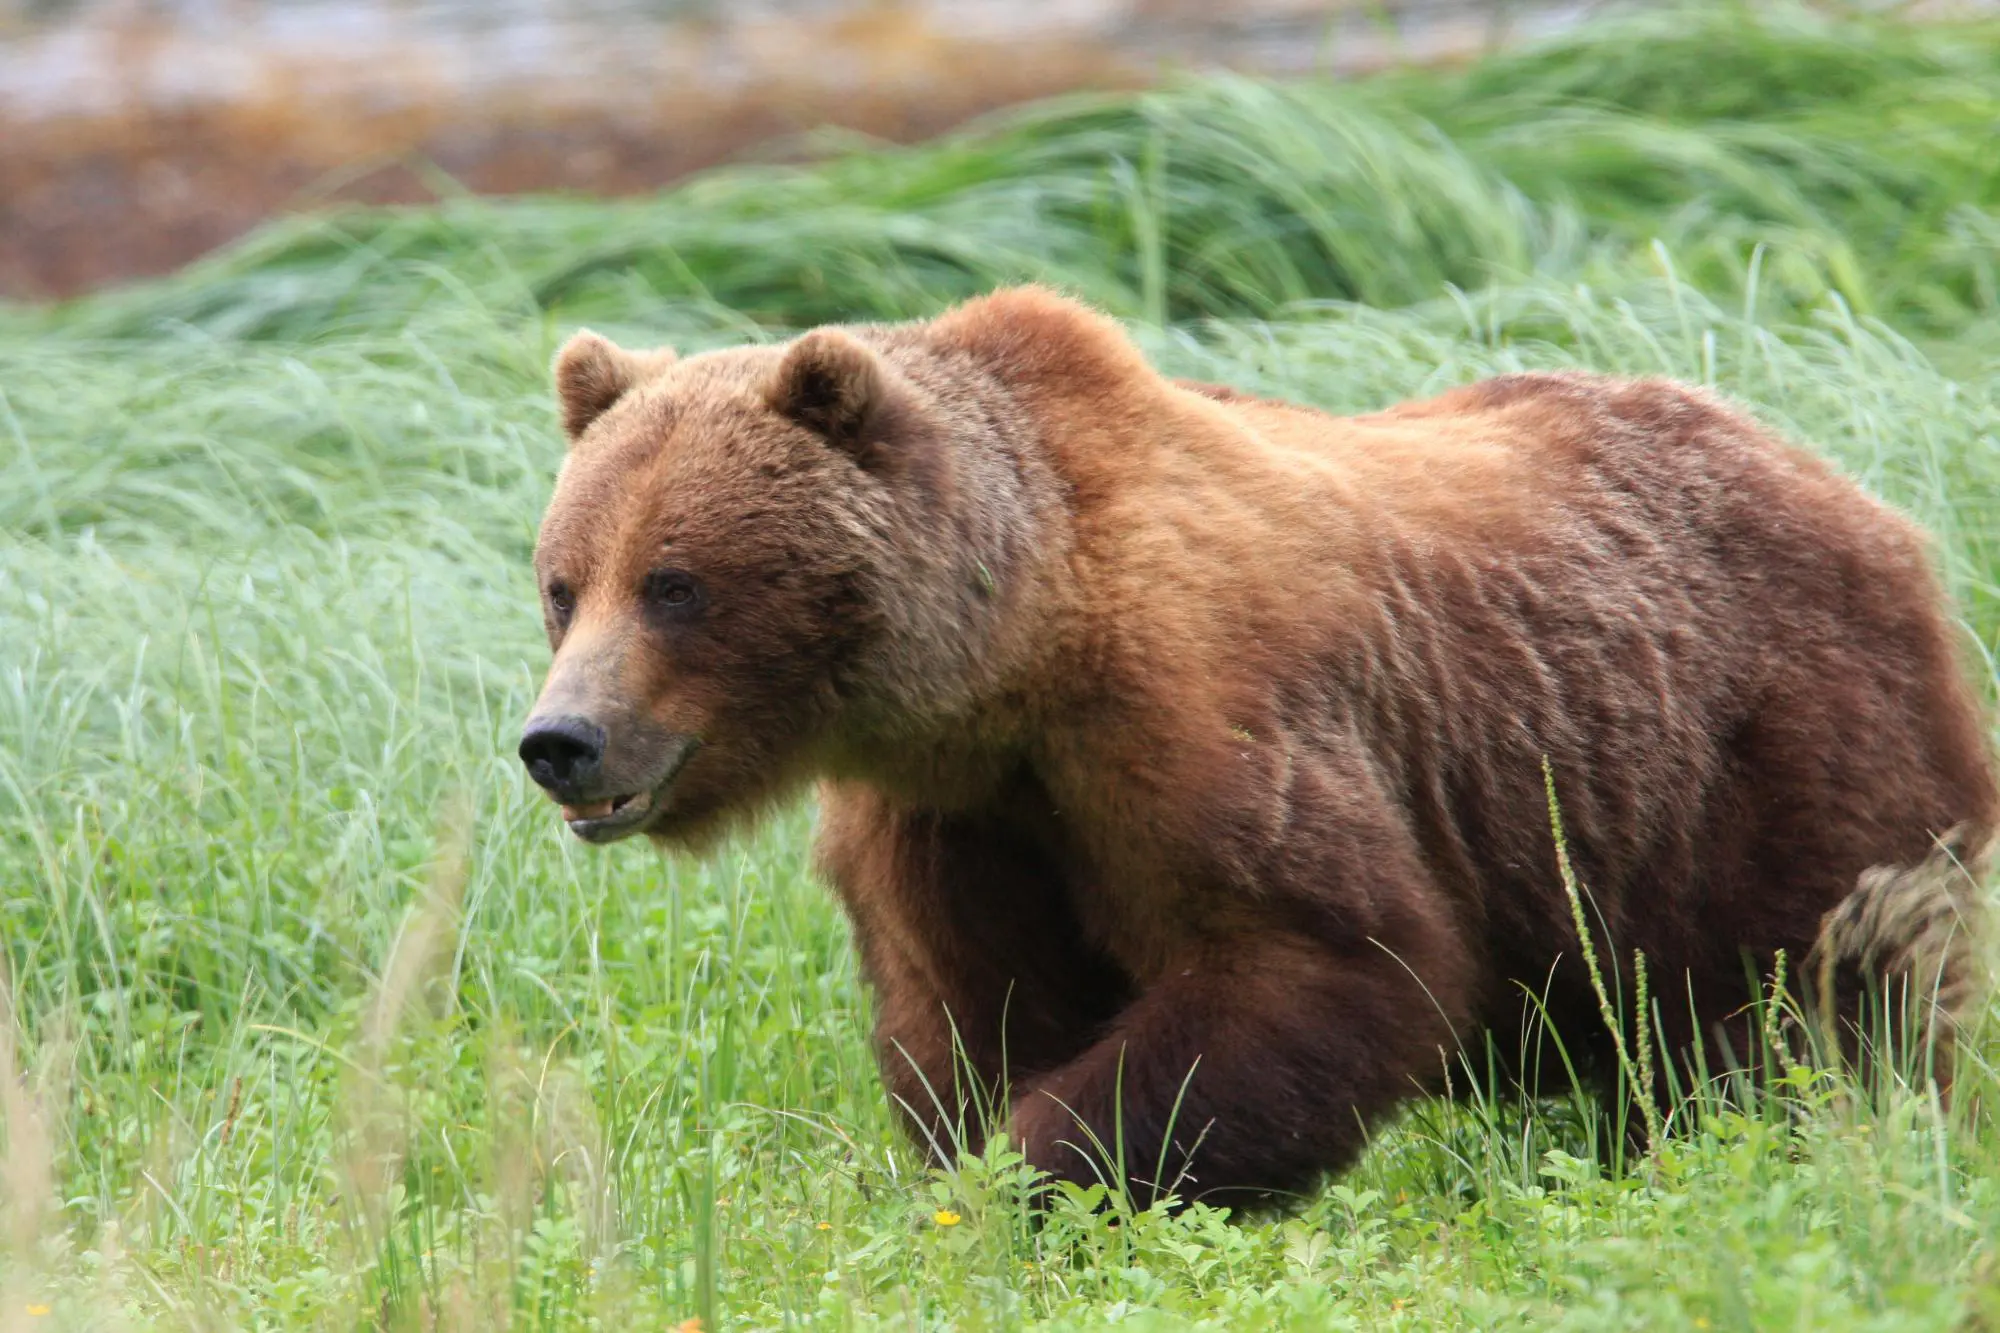 הדוב הצפוני נראה רגוע אבל בשבריר שניה, הוא יכול להפוך לחיית טרף מסוכנת  בניגוד לרכב הפנאי החדש, הלוקח מהדוב רק את שמו ההרפתקני